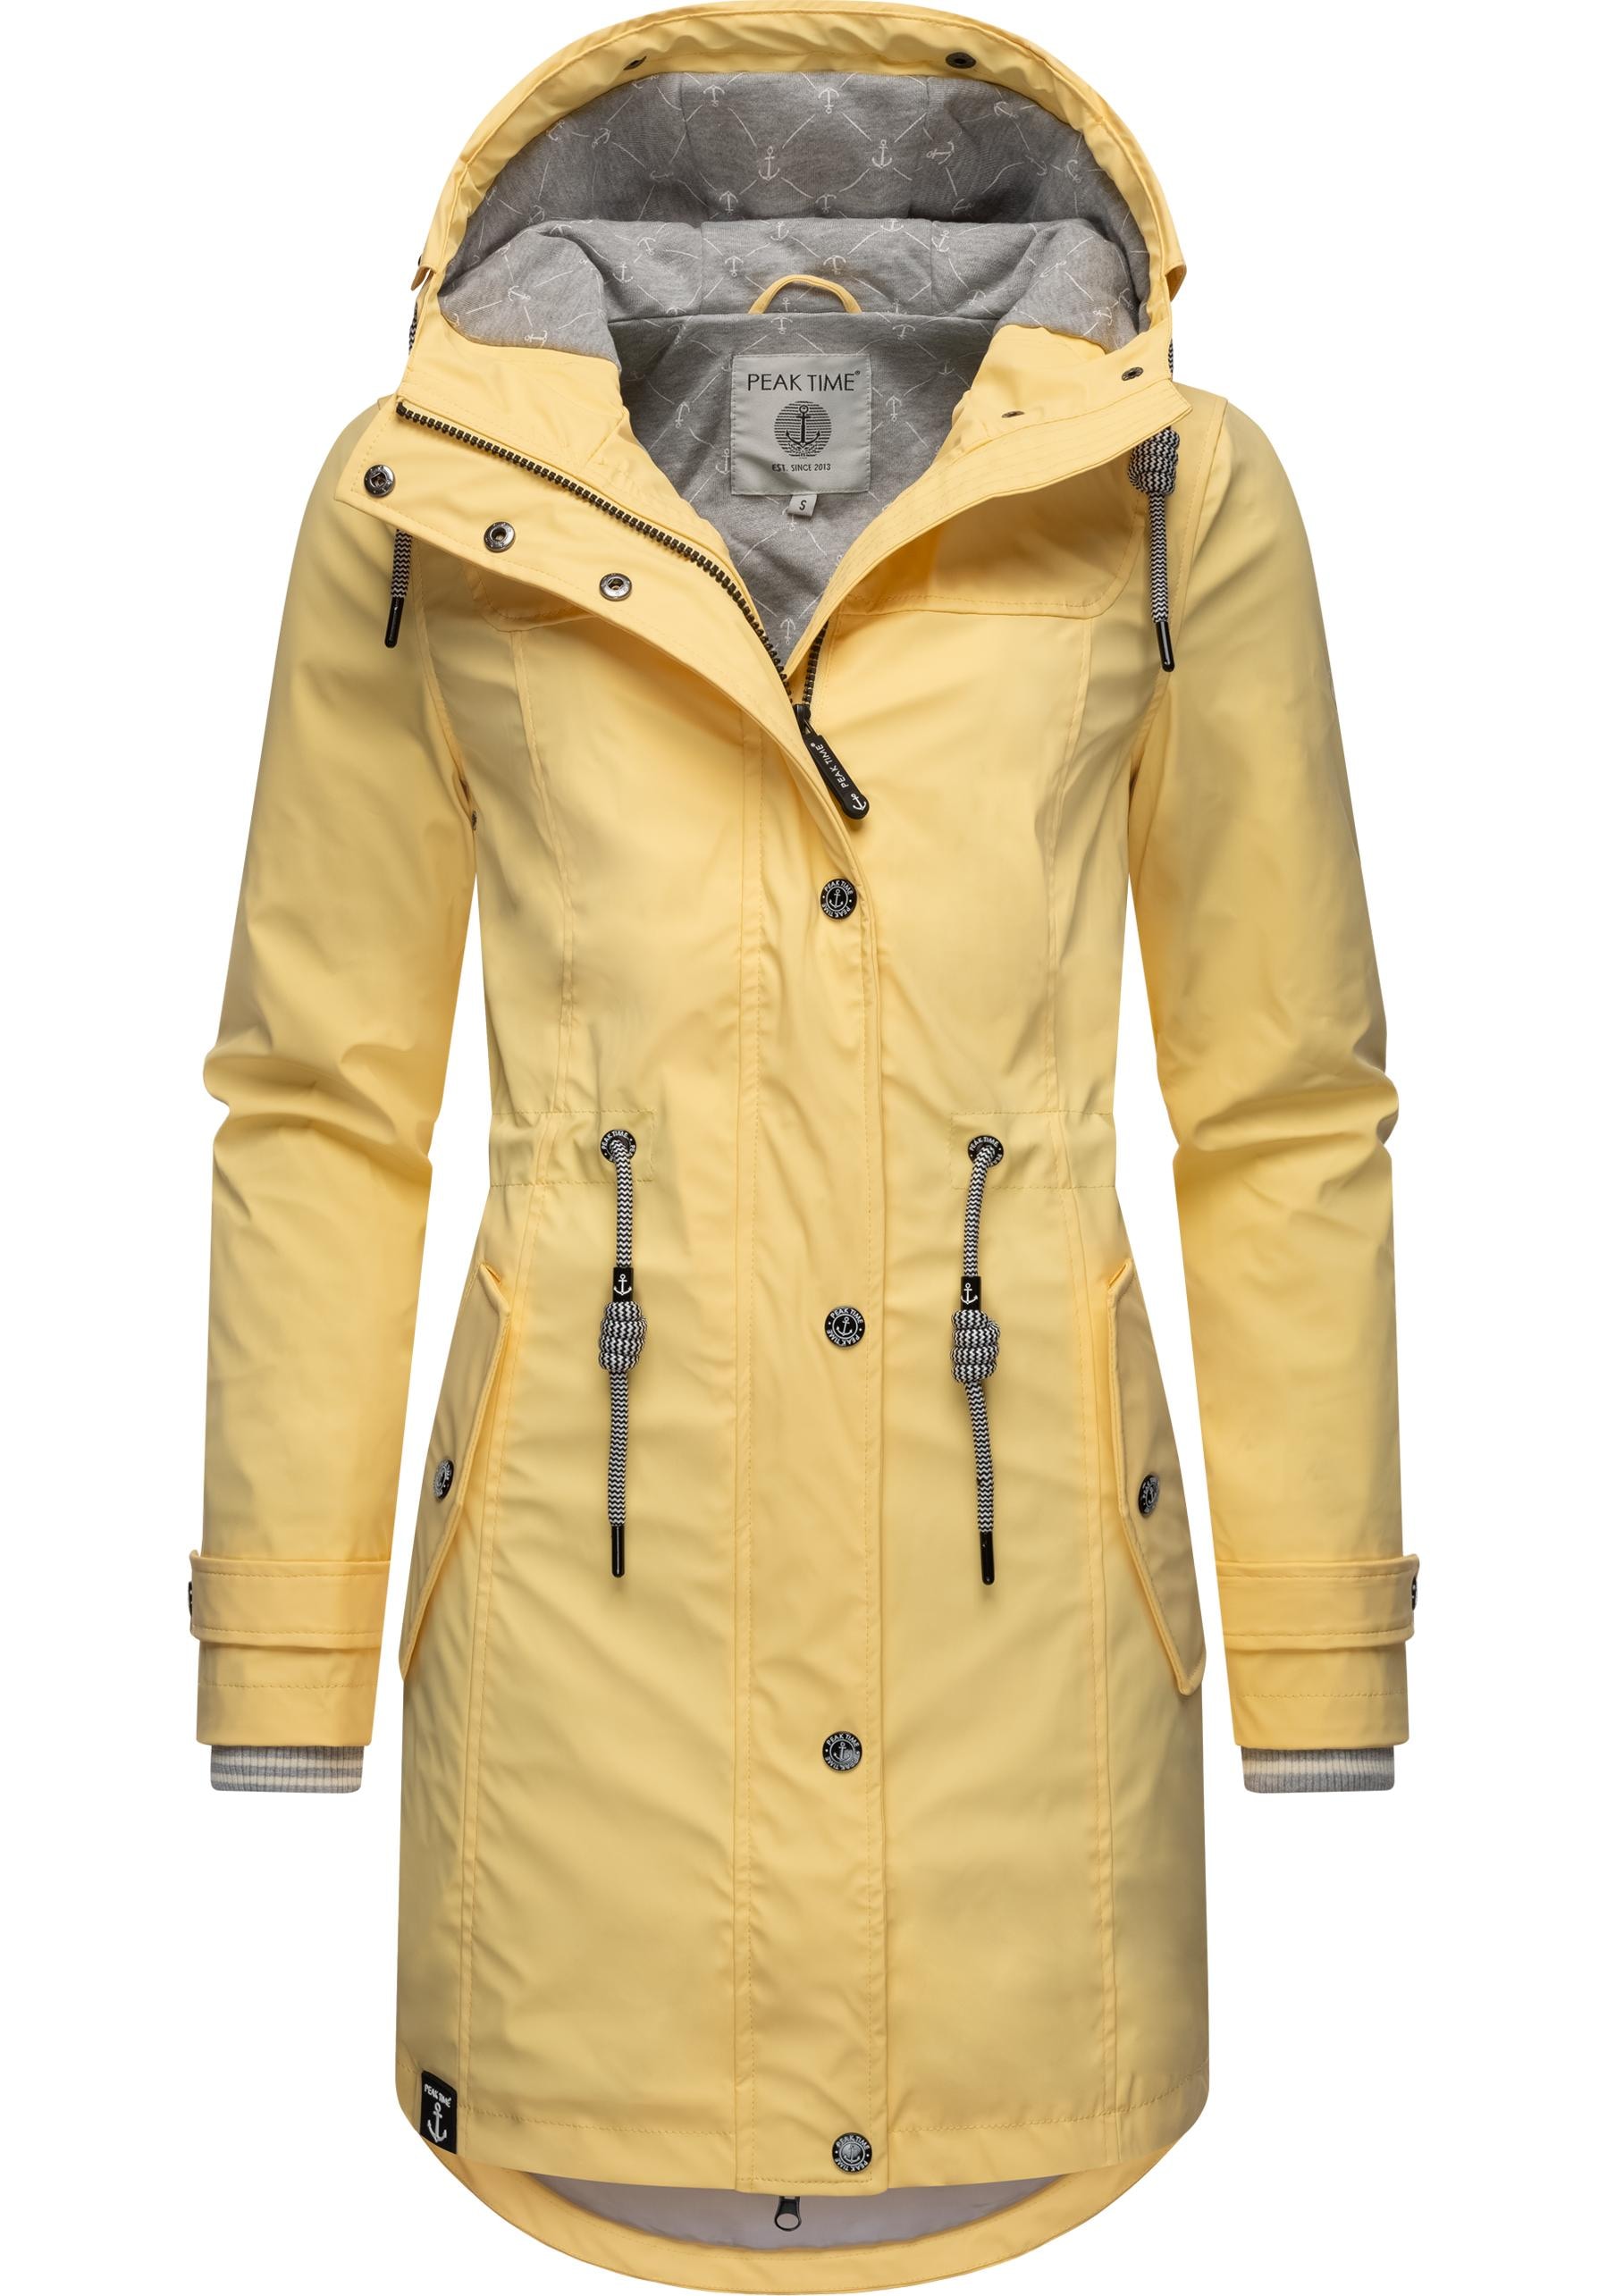 TIME BAUR für PEAK mit Regenmantel stylisch Kapuze, Regenjacke Damen taillierter »L60042«, für | kaufen